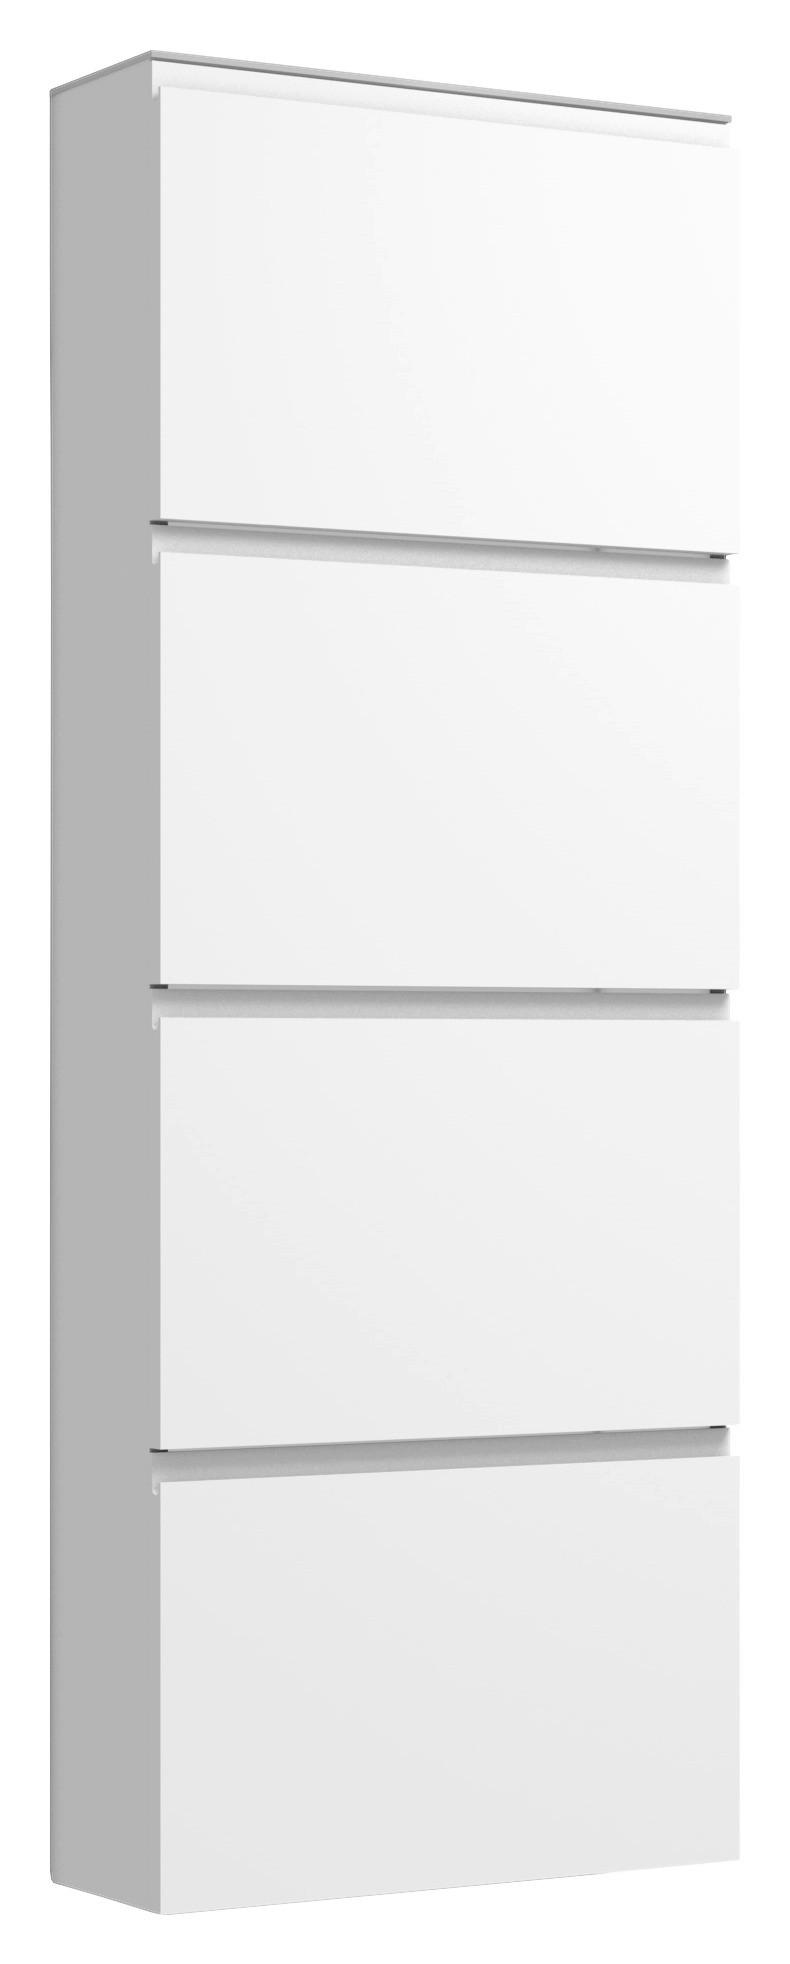 SCHUHKIPPER lackiert Weiß  - Weiß, Design, Glas (60/161/22cm) - Moderano